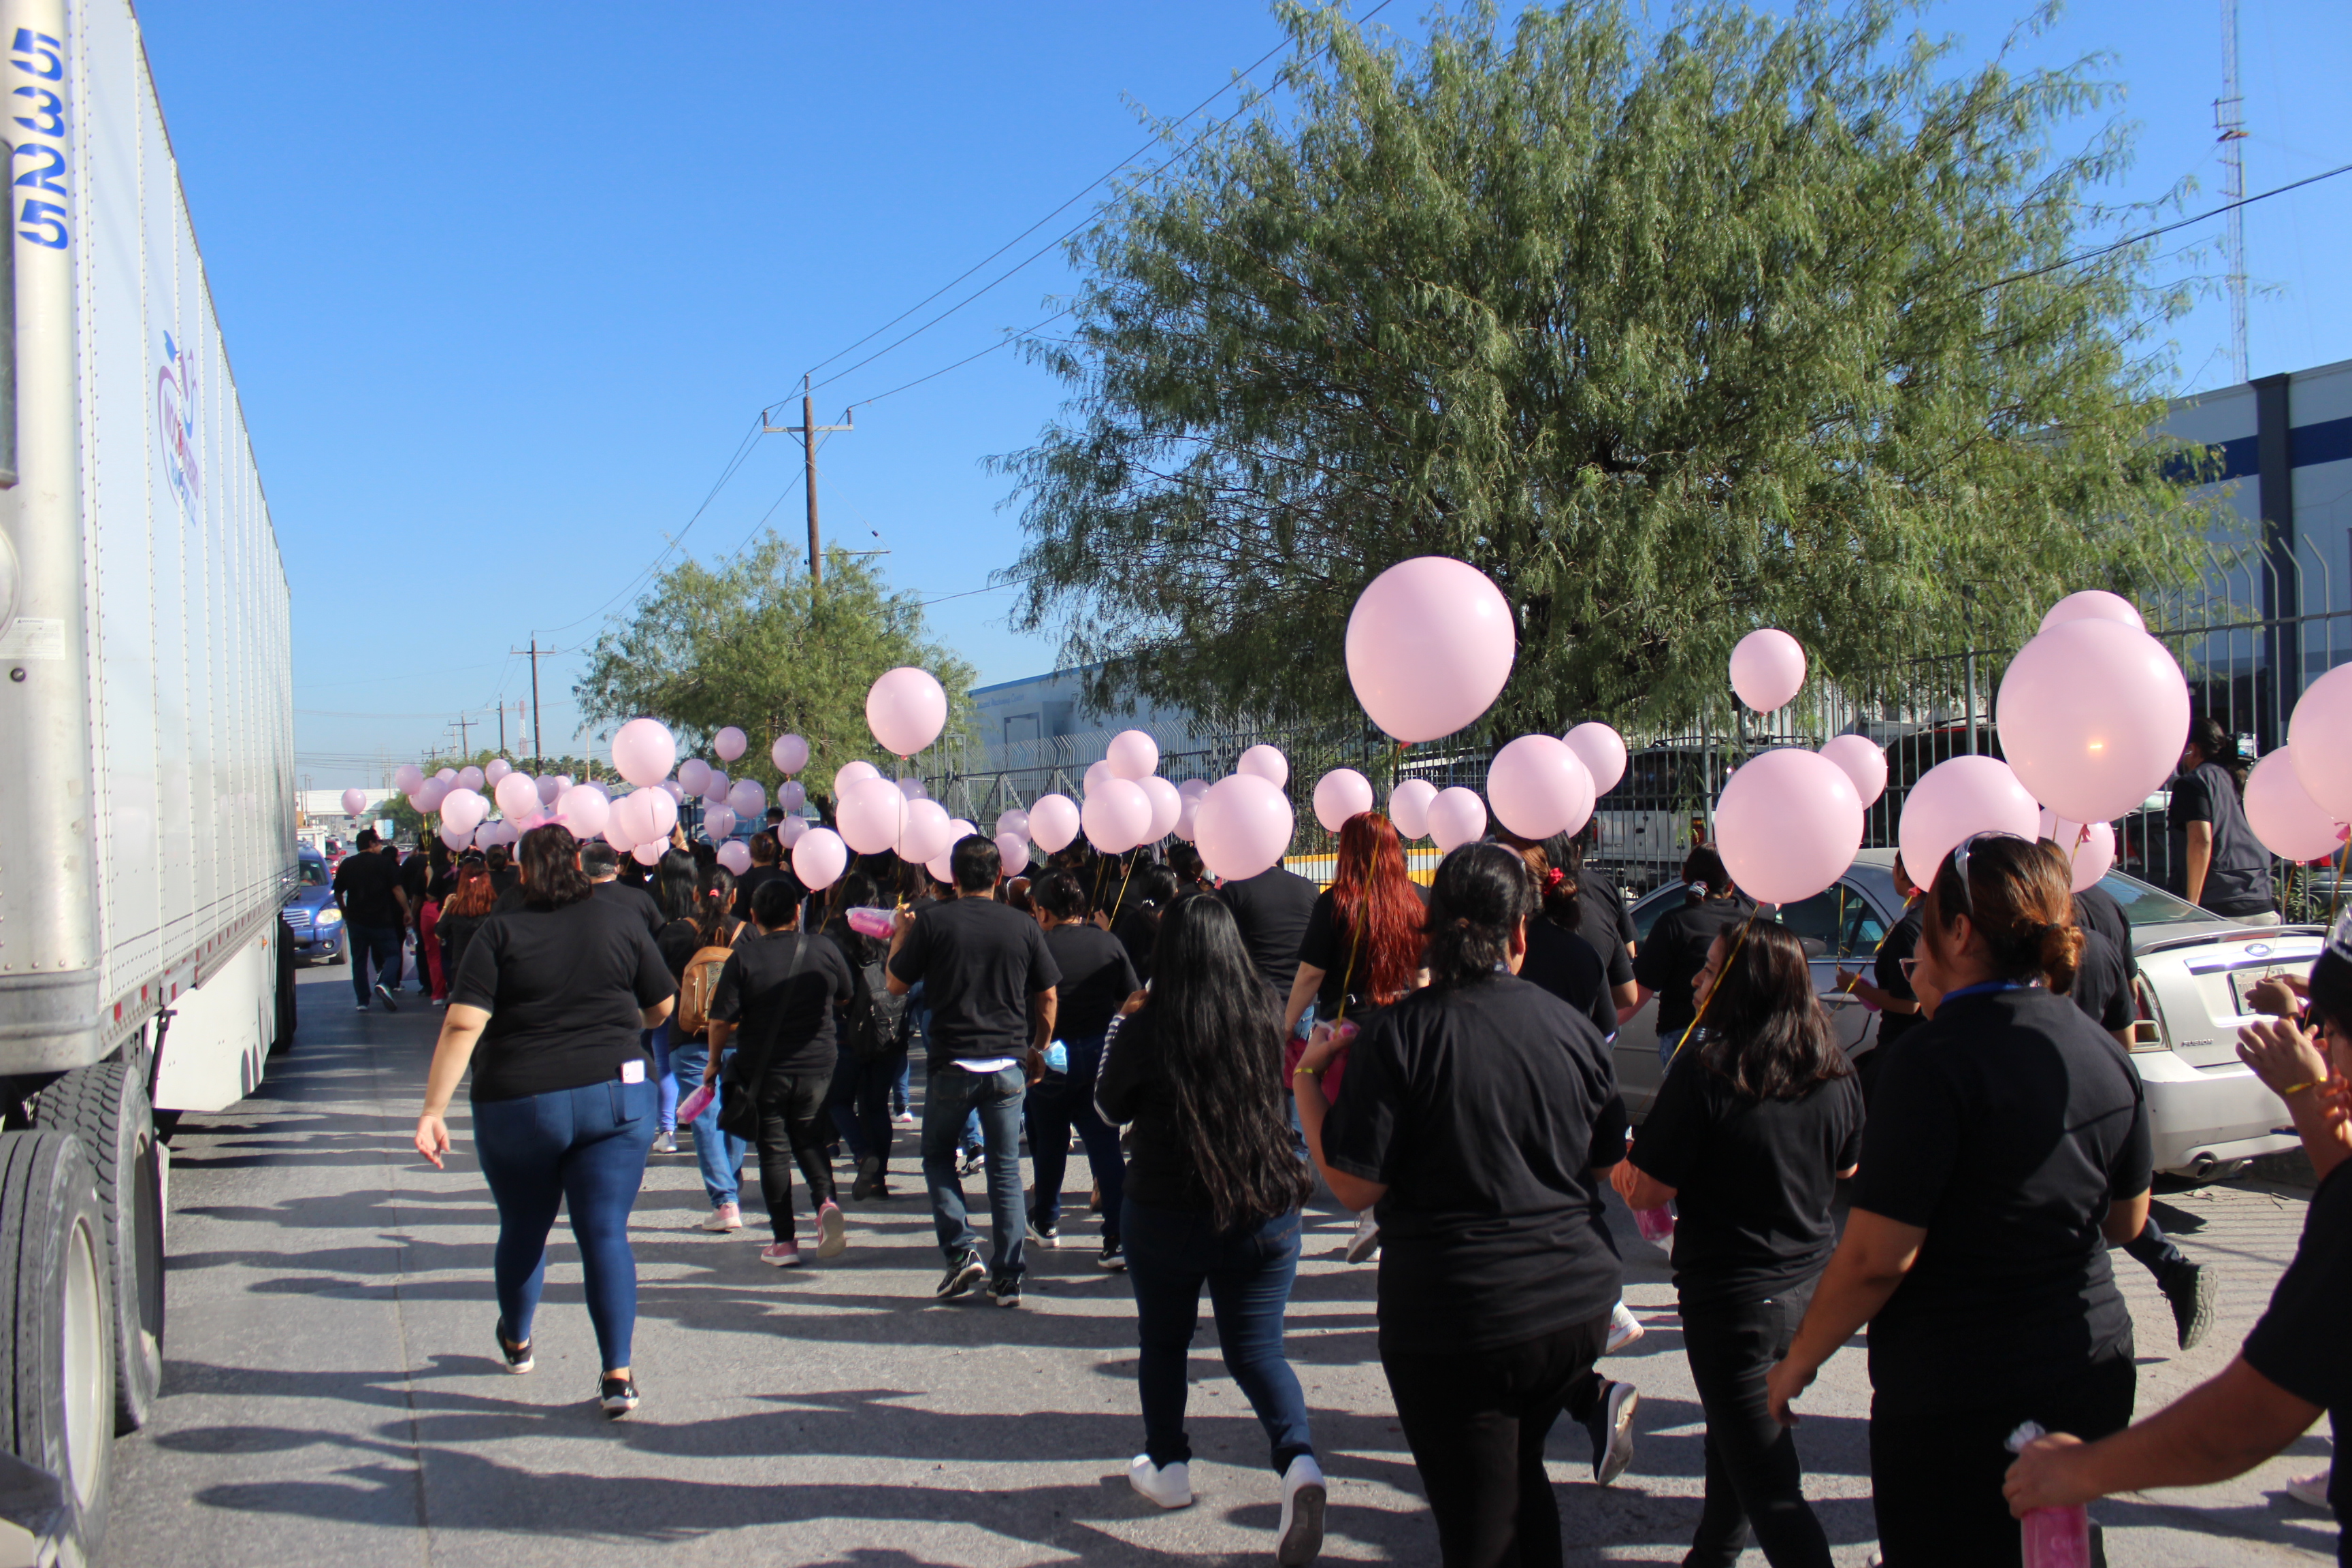 Una de las pioneras de esta marcha fue Nancy Sobrevilla, ex gerente de recursos humanos de Erika de Reynosa y quien falleció a causa de la enfermedad.